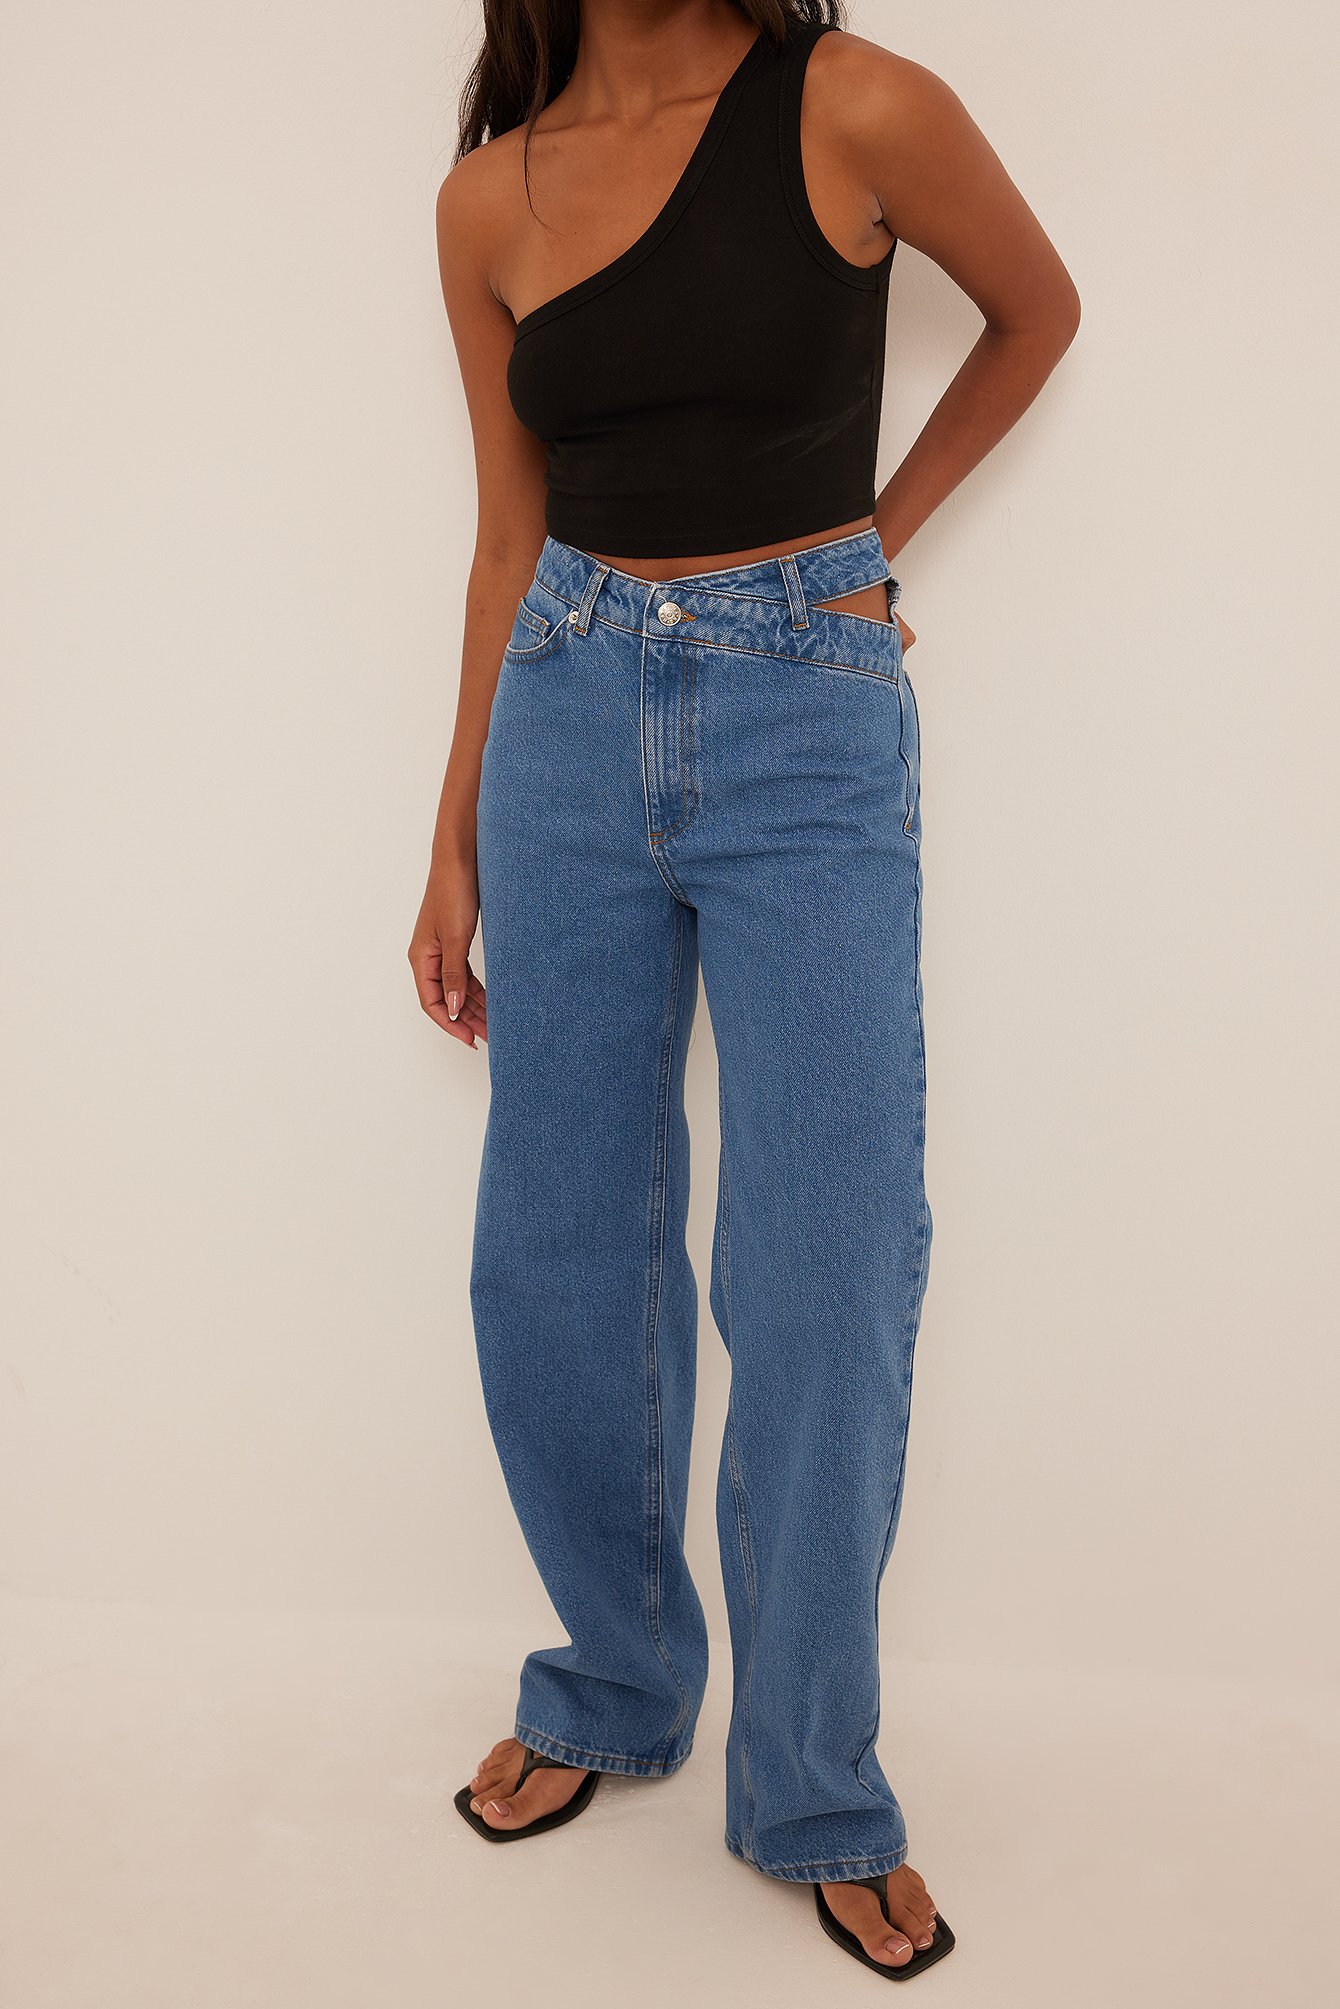 Area Denim Jeansshorts Mit Cut-out Und Kristallen in Blau Damen Bekleidung Jeans Jeans mit gerader Passform 